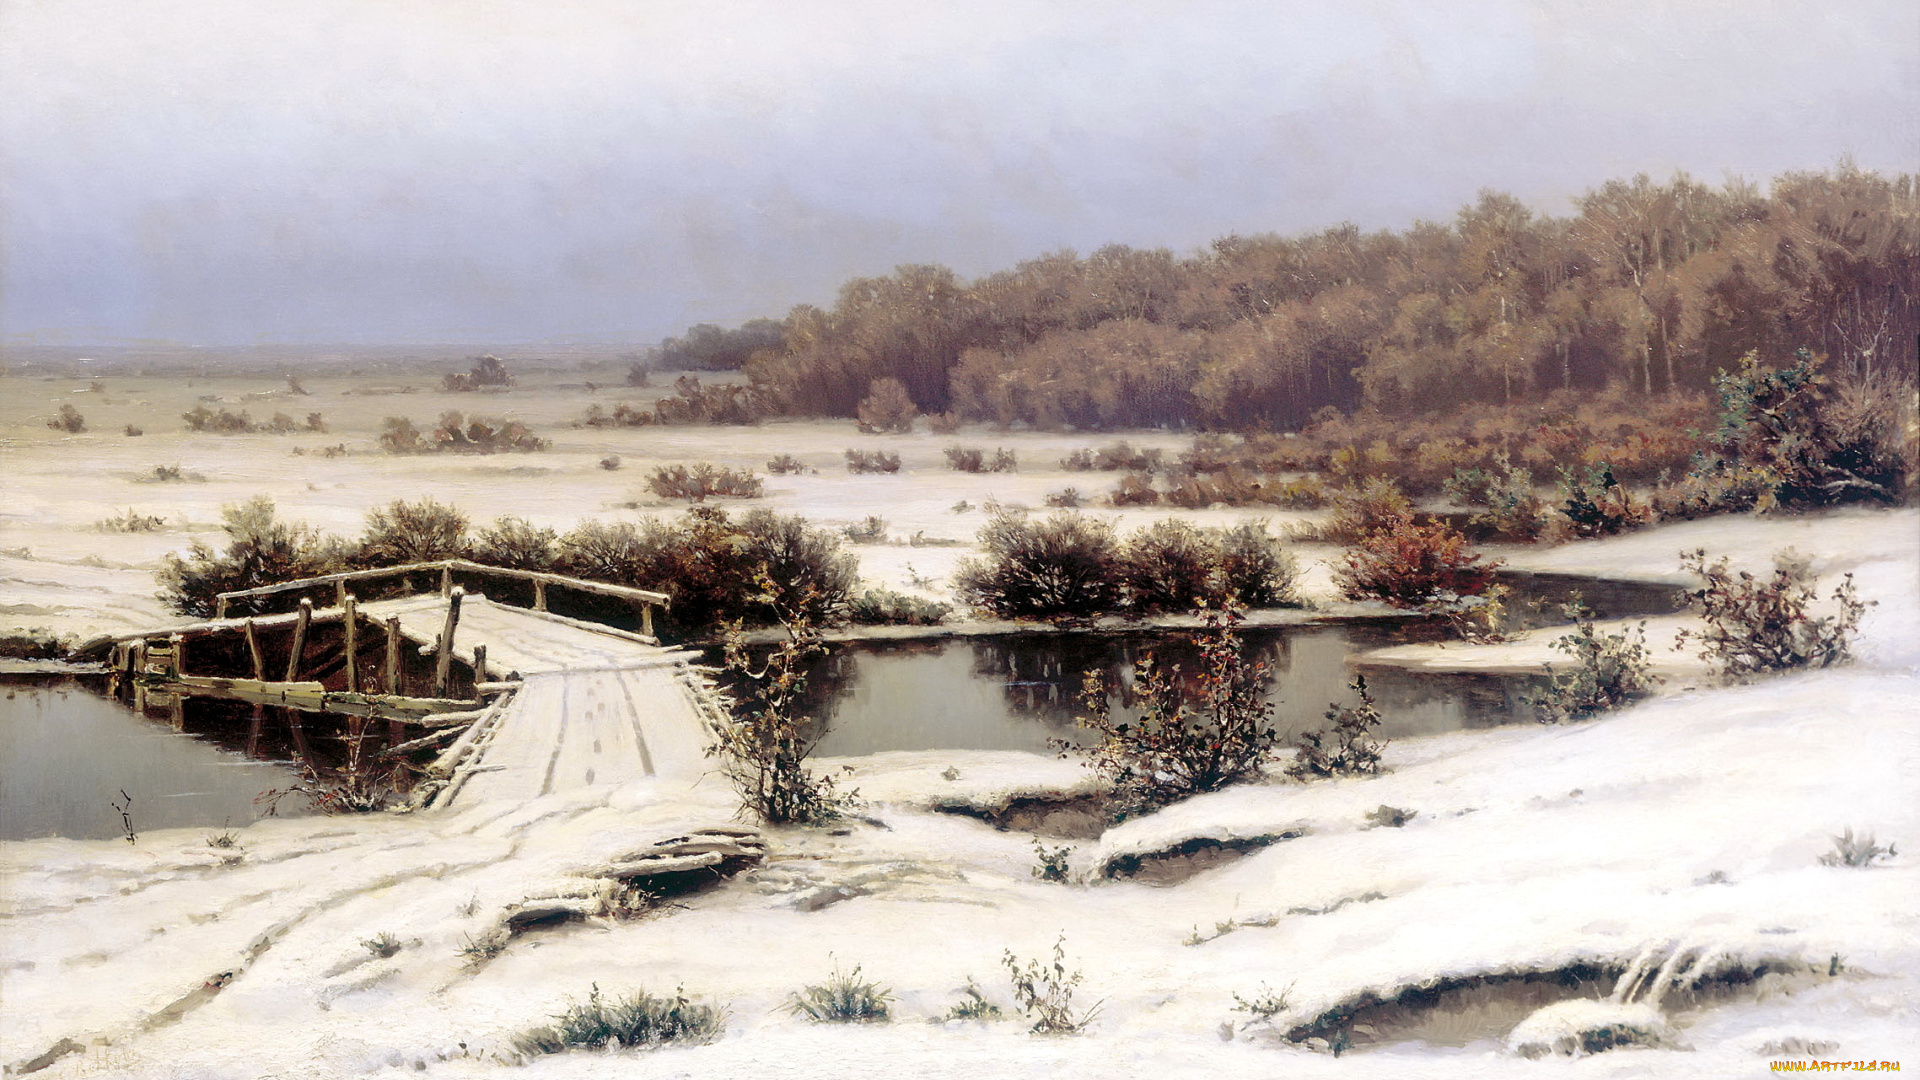 рисованное, живопись, речка, мост, картина, холод, пейзаж, первый, снег, небо, берег, вода, лес, деревья, кусты, холст